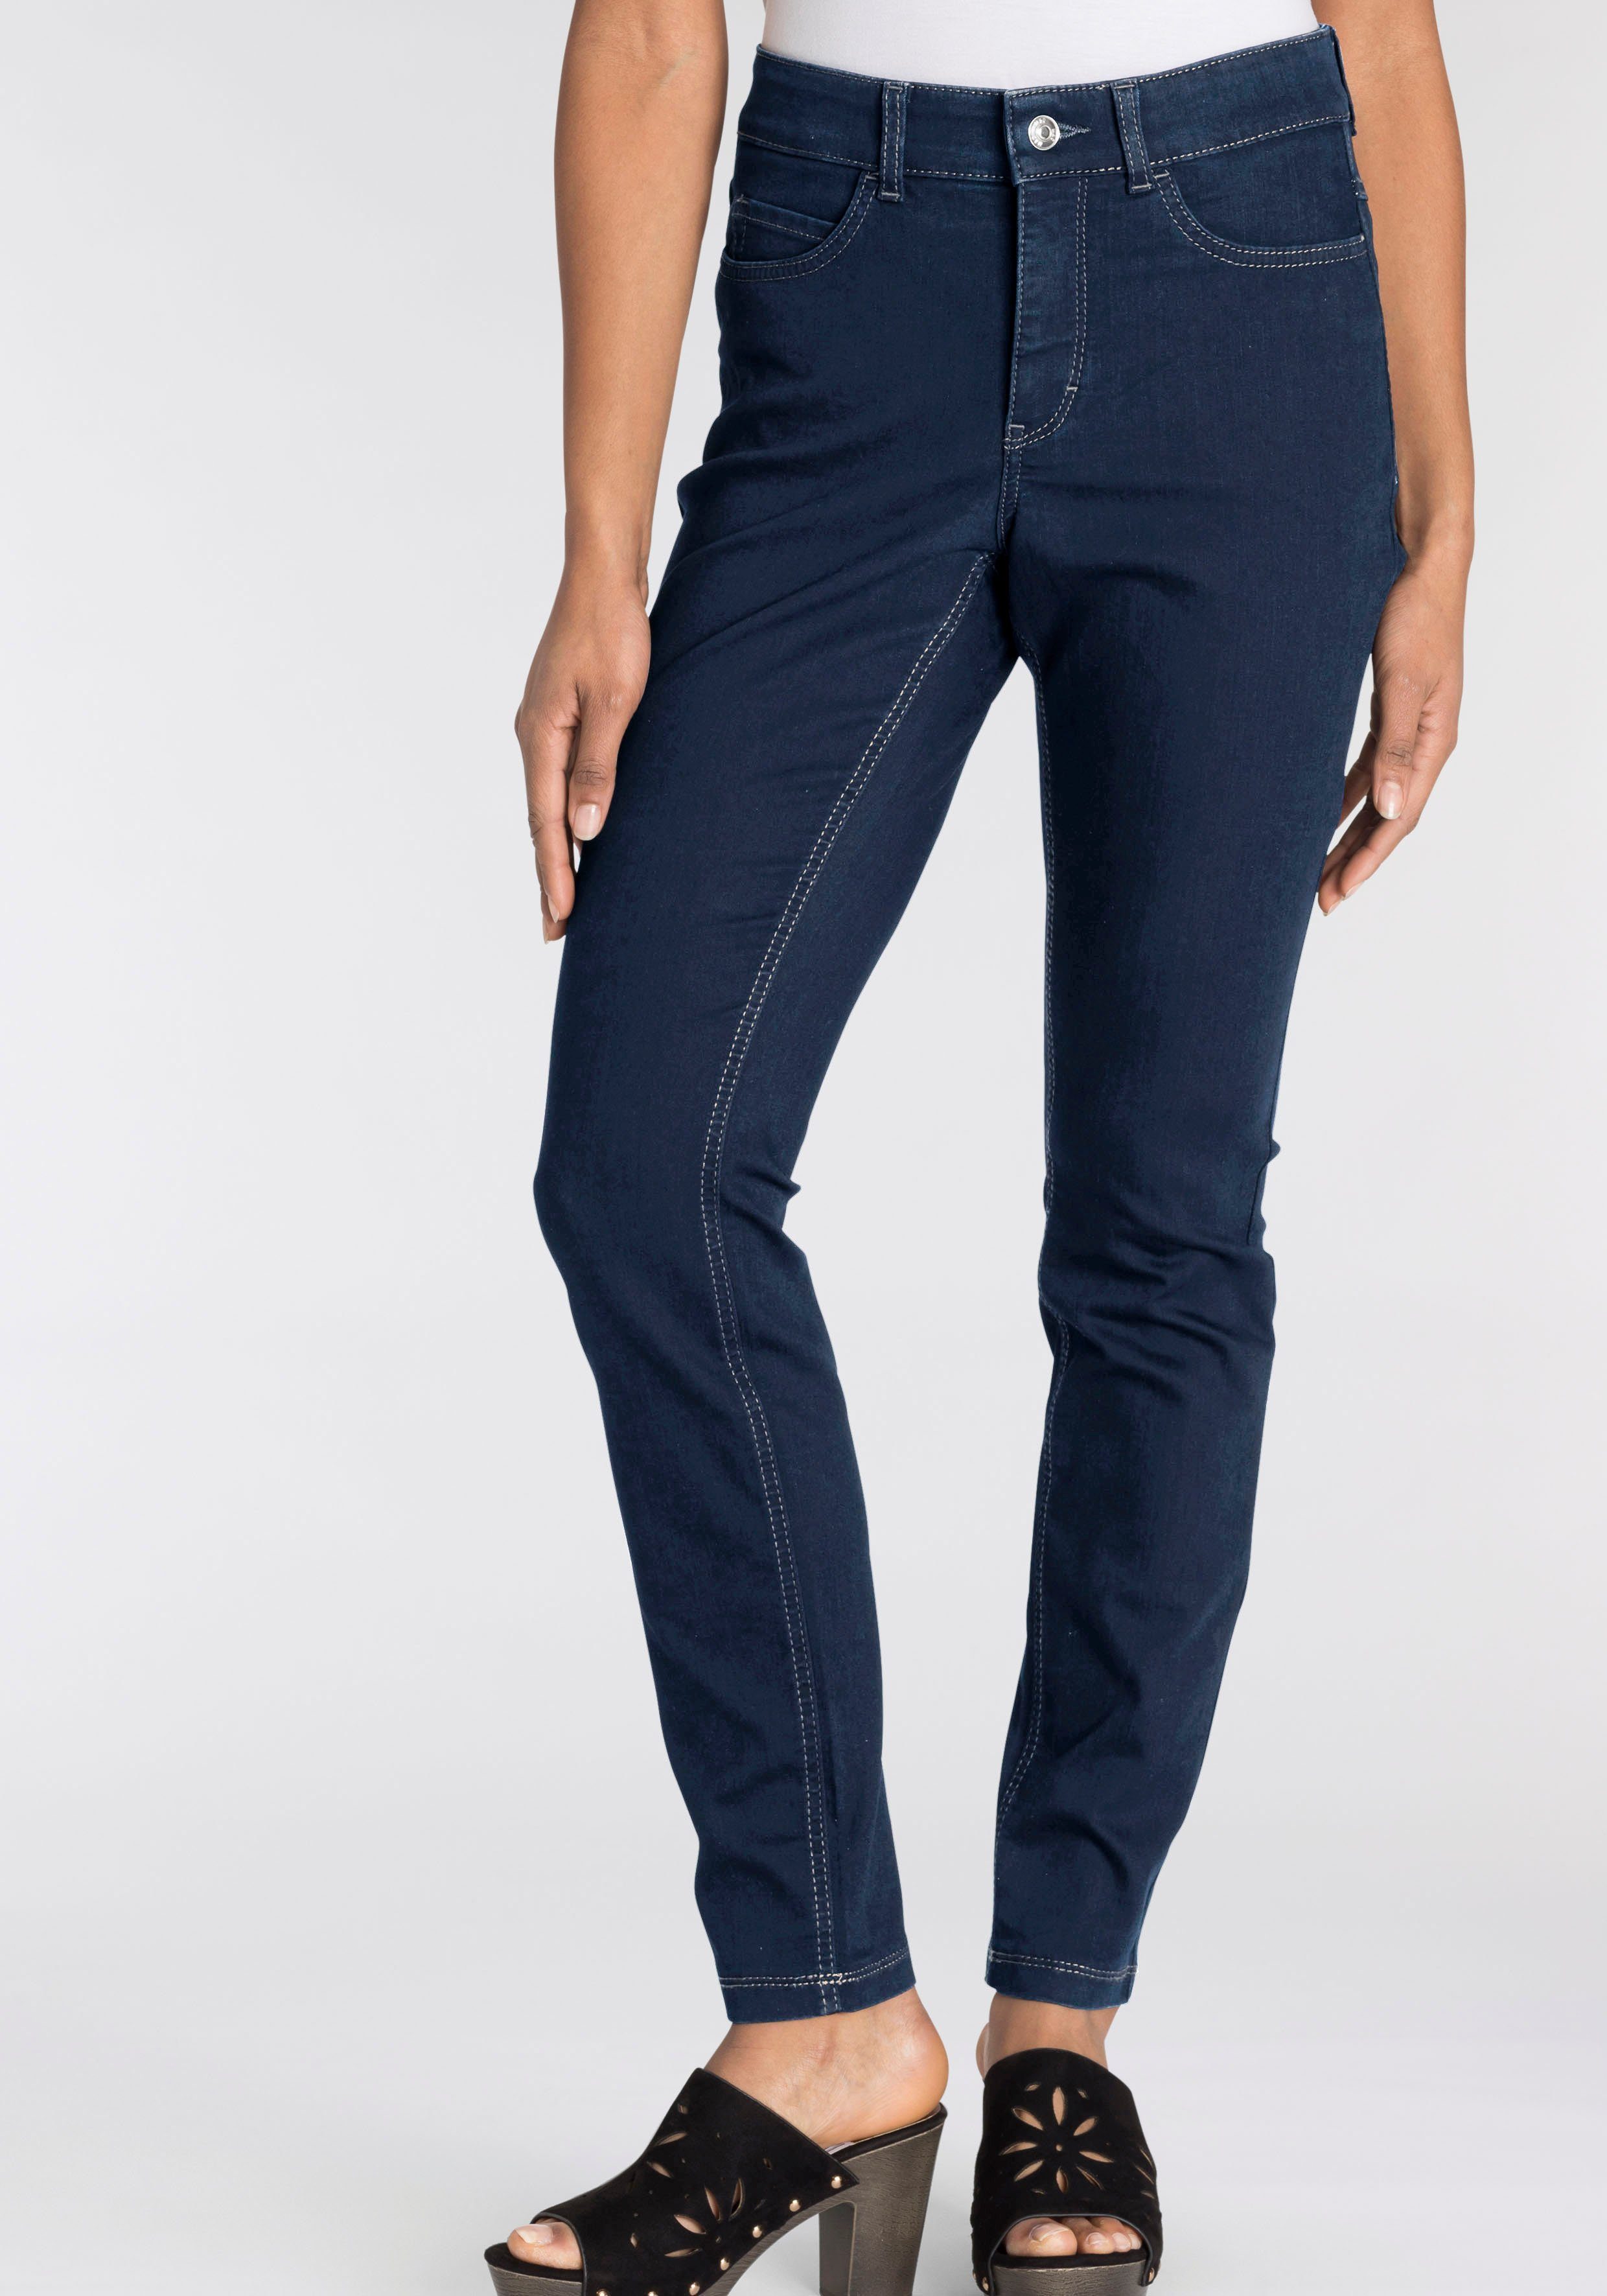 Tag Qualität Skinny-fit-Jeans Hiperstretch-Skinny bequem MAC den basic Power-Stretch new blue ganzen sitzt dark wash